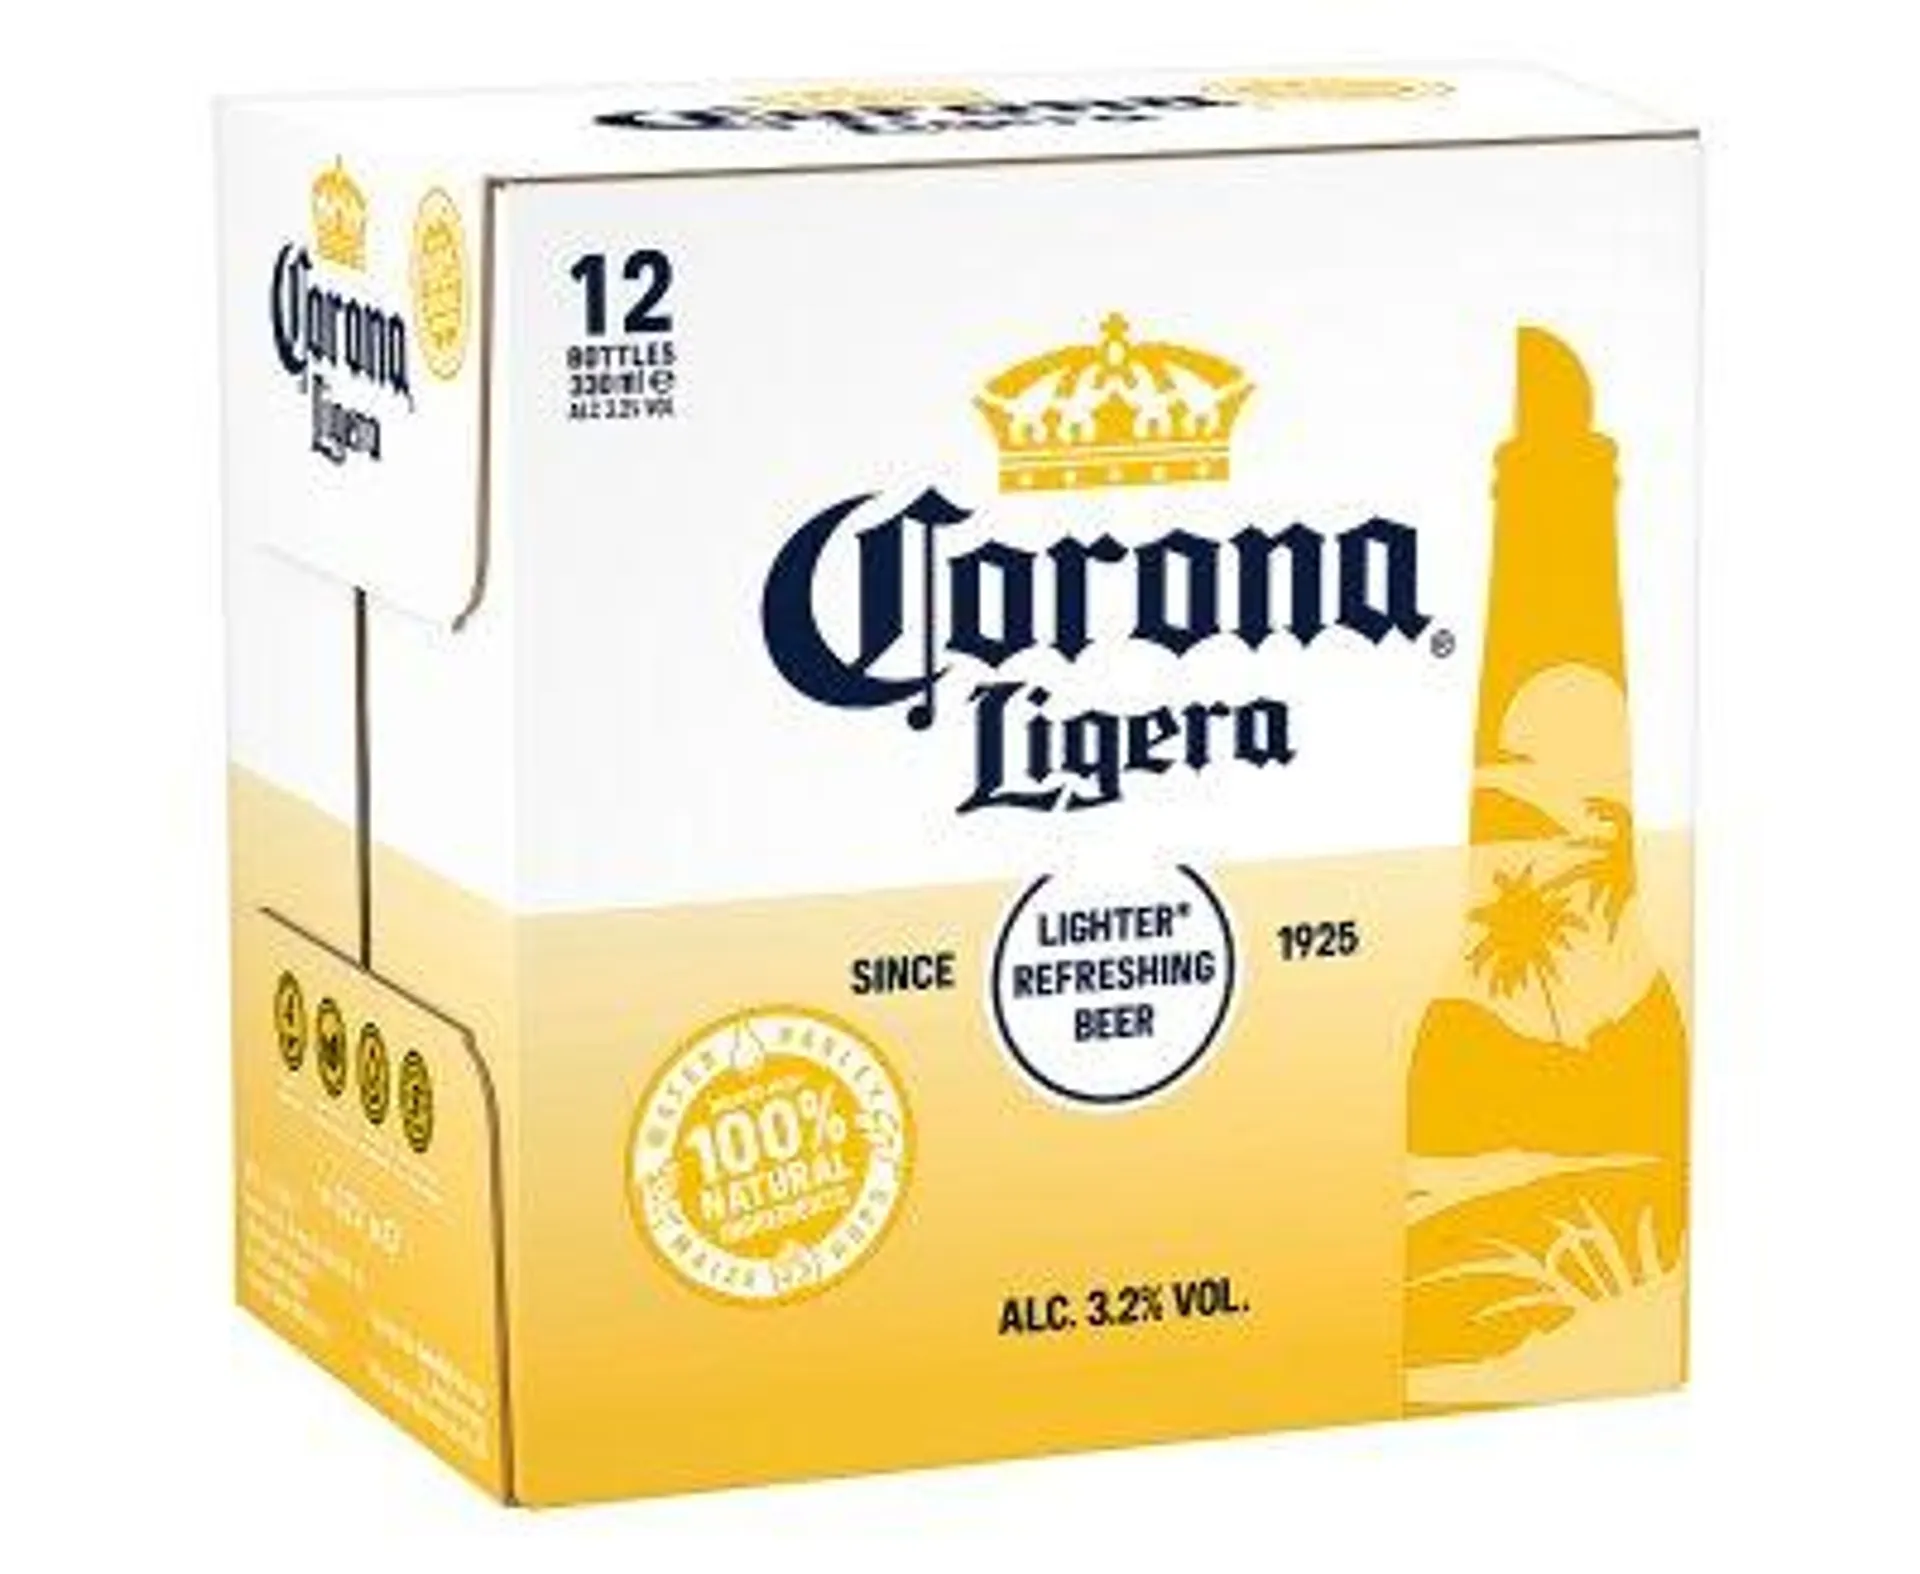 Corona Ligera Bot 355ml 12Pk 3.2%